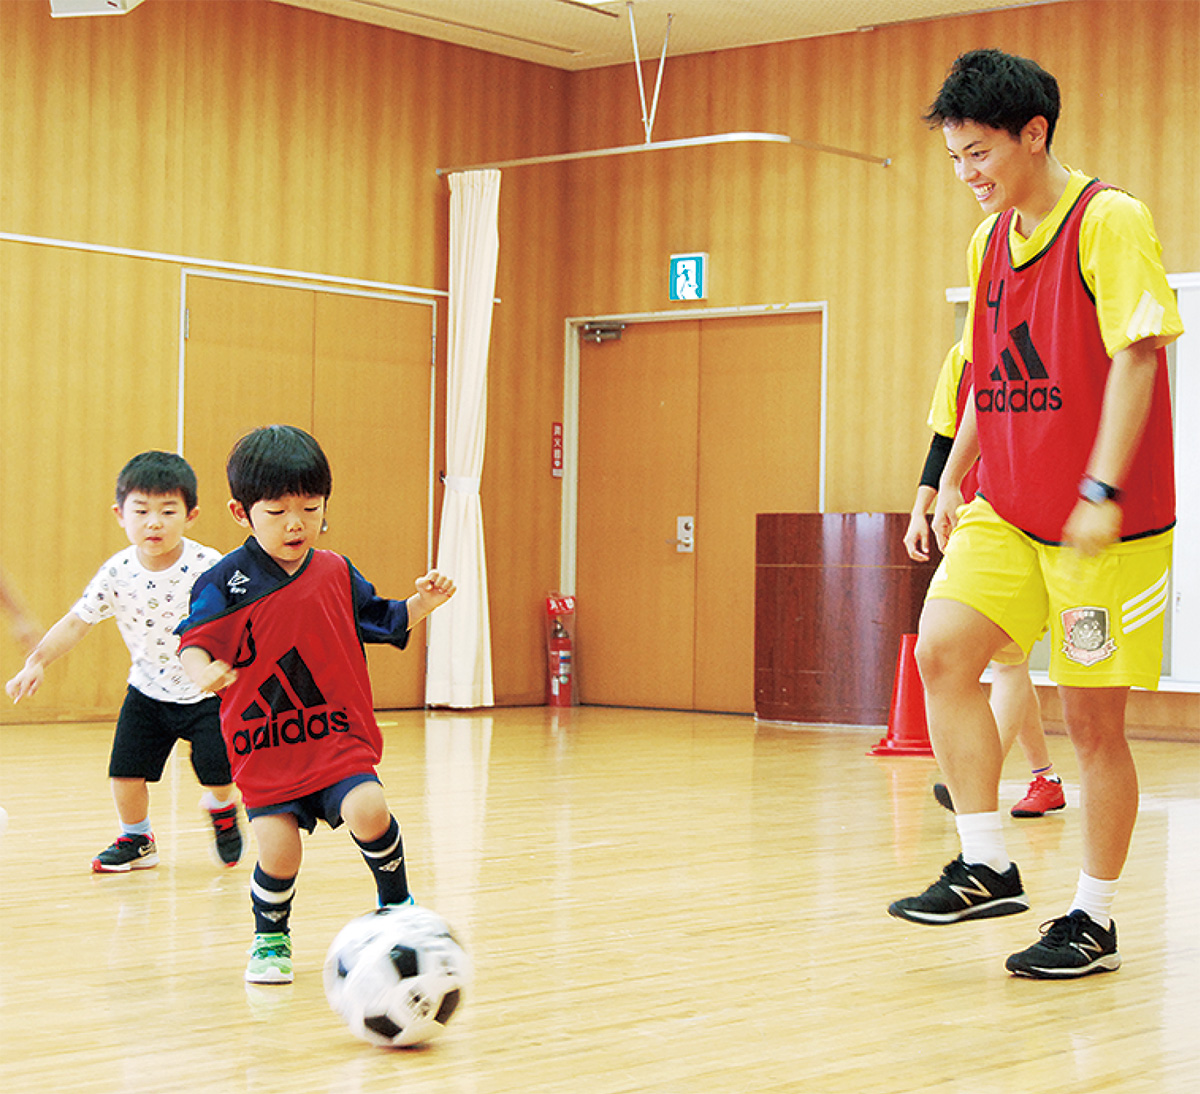 日体大fields横浜 地区センでサッカー体験 初の開催に親子15組 青葉区 タウンニュース